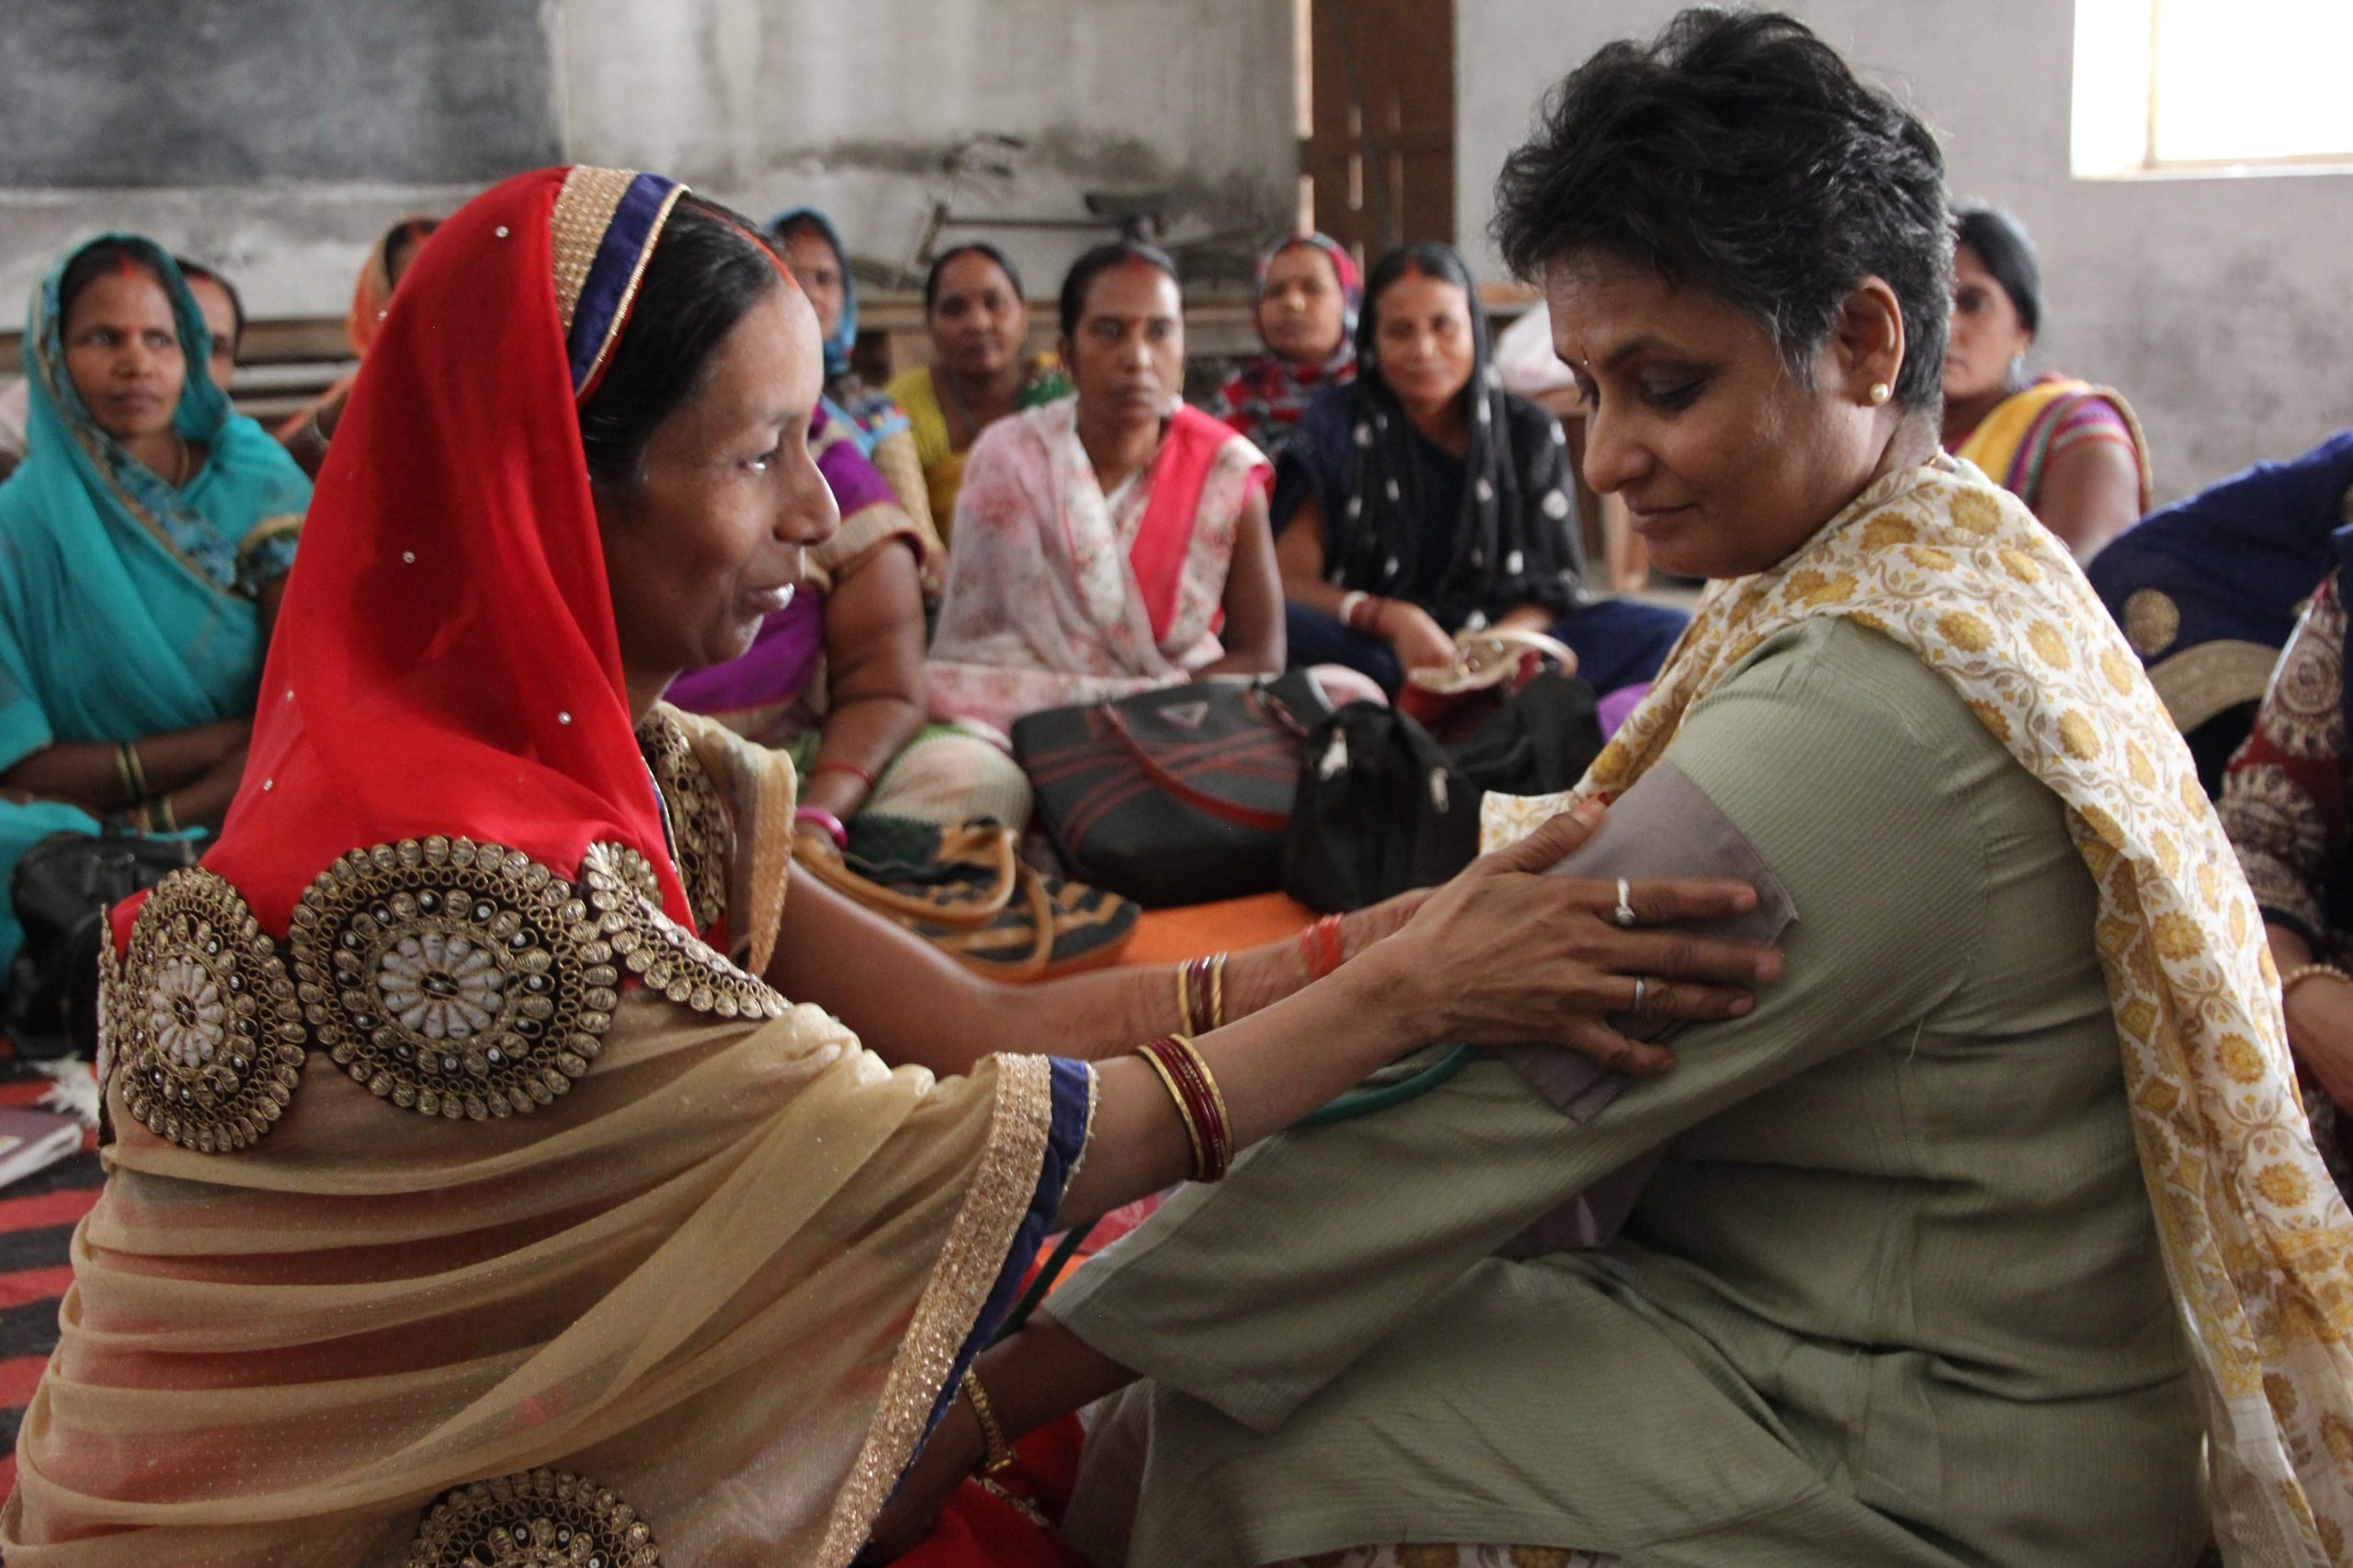 Mukti Bosco: A empreendedora social indiana que está mudando vidas com seu toque de cura